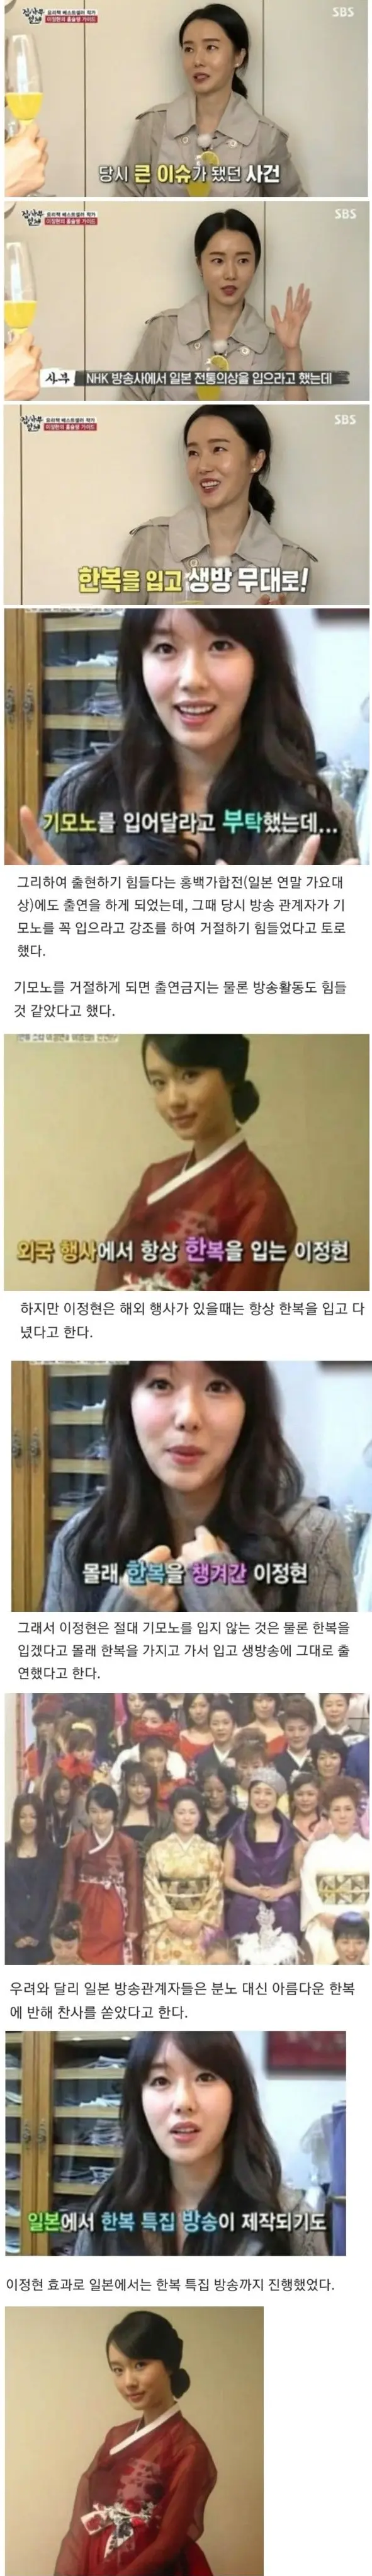 image.png 어떤 한국연예인이 일본에서 보인 패기